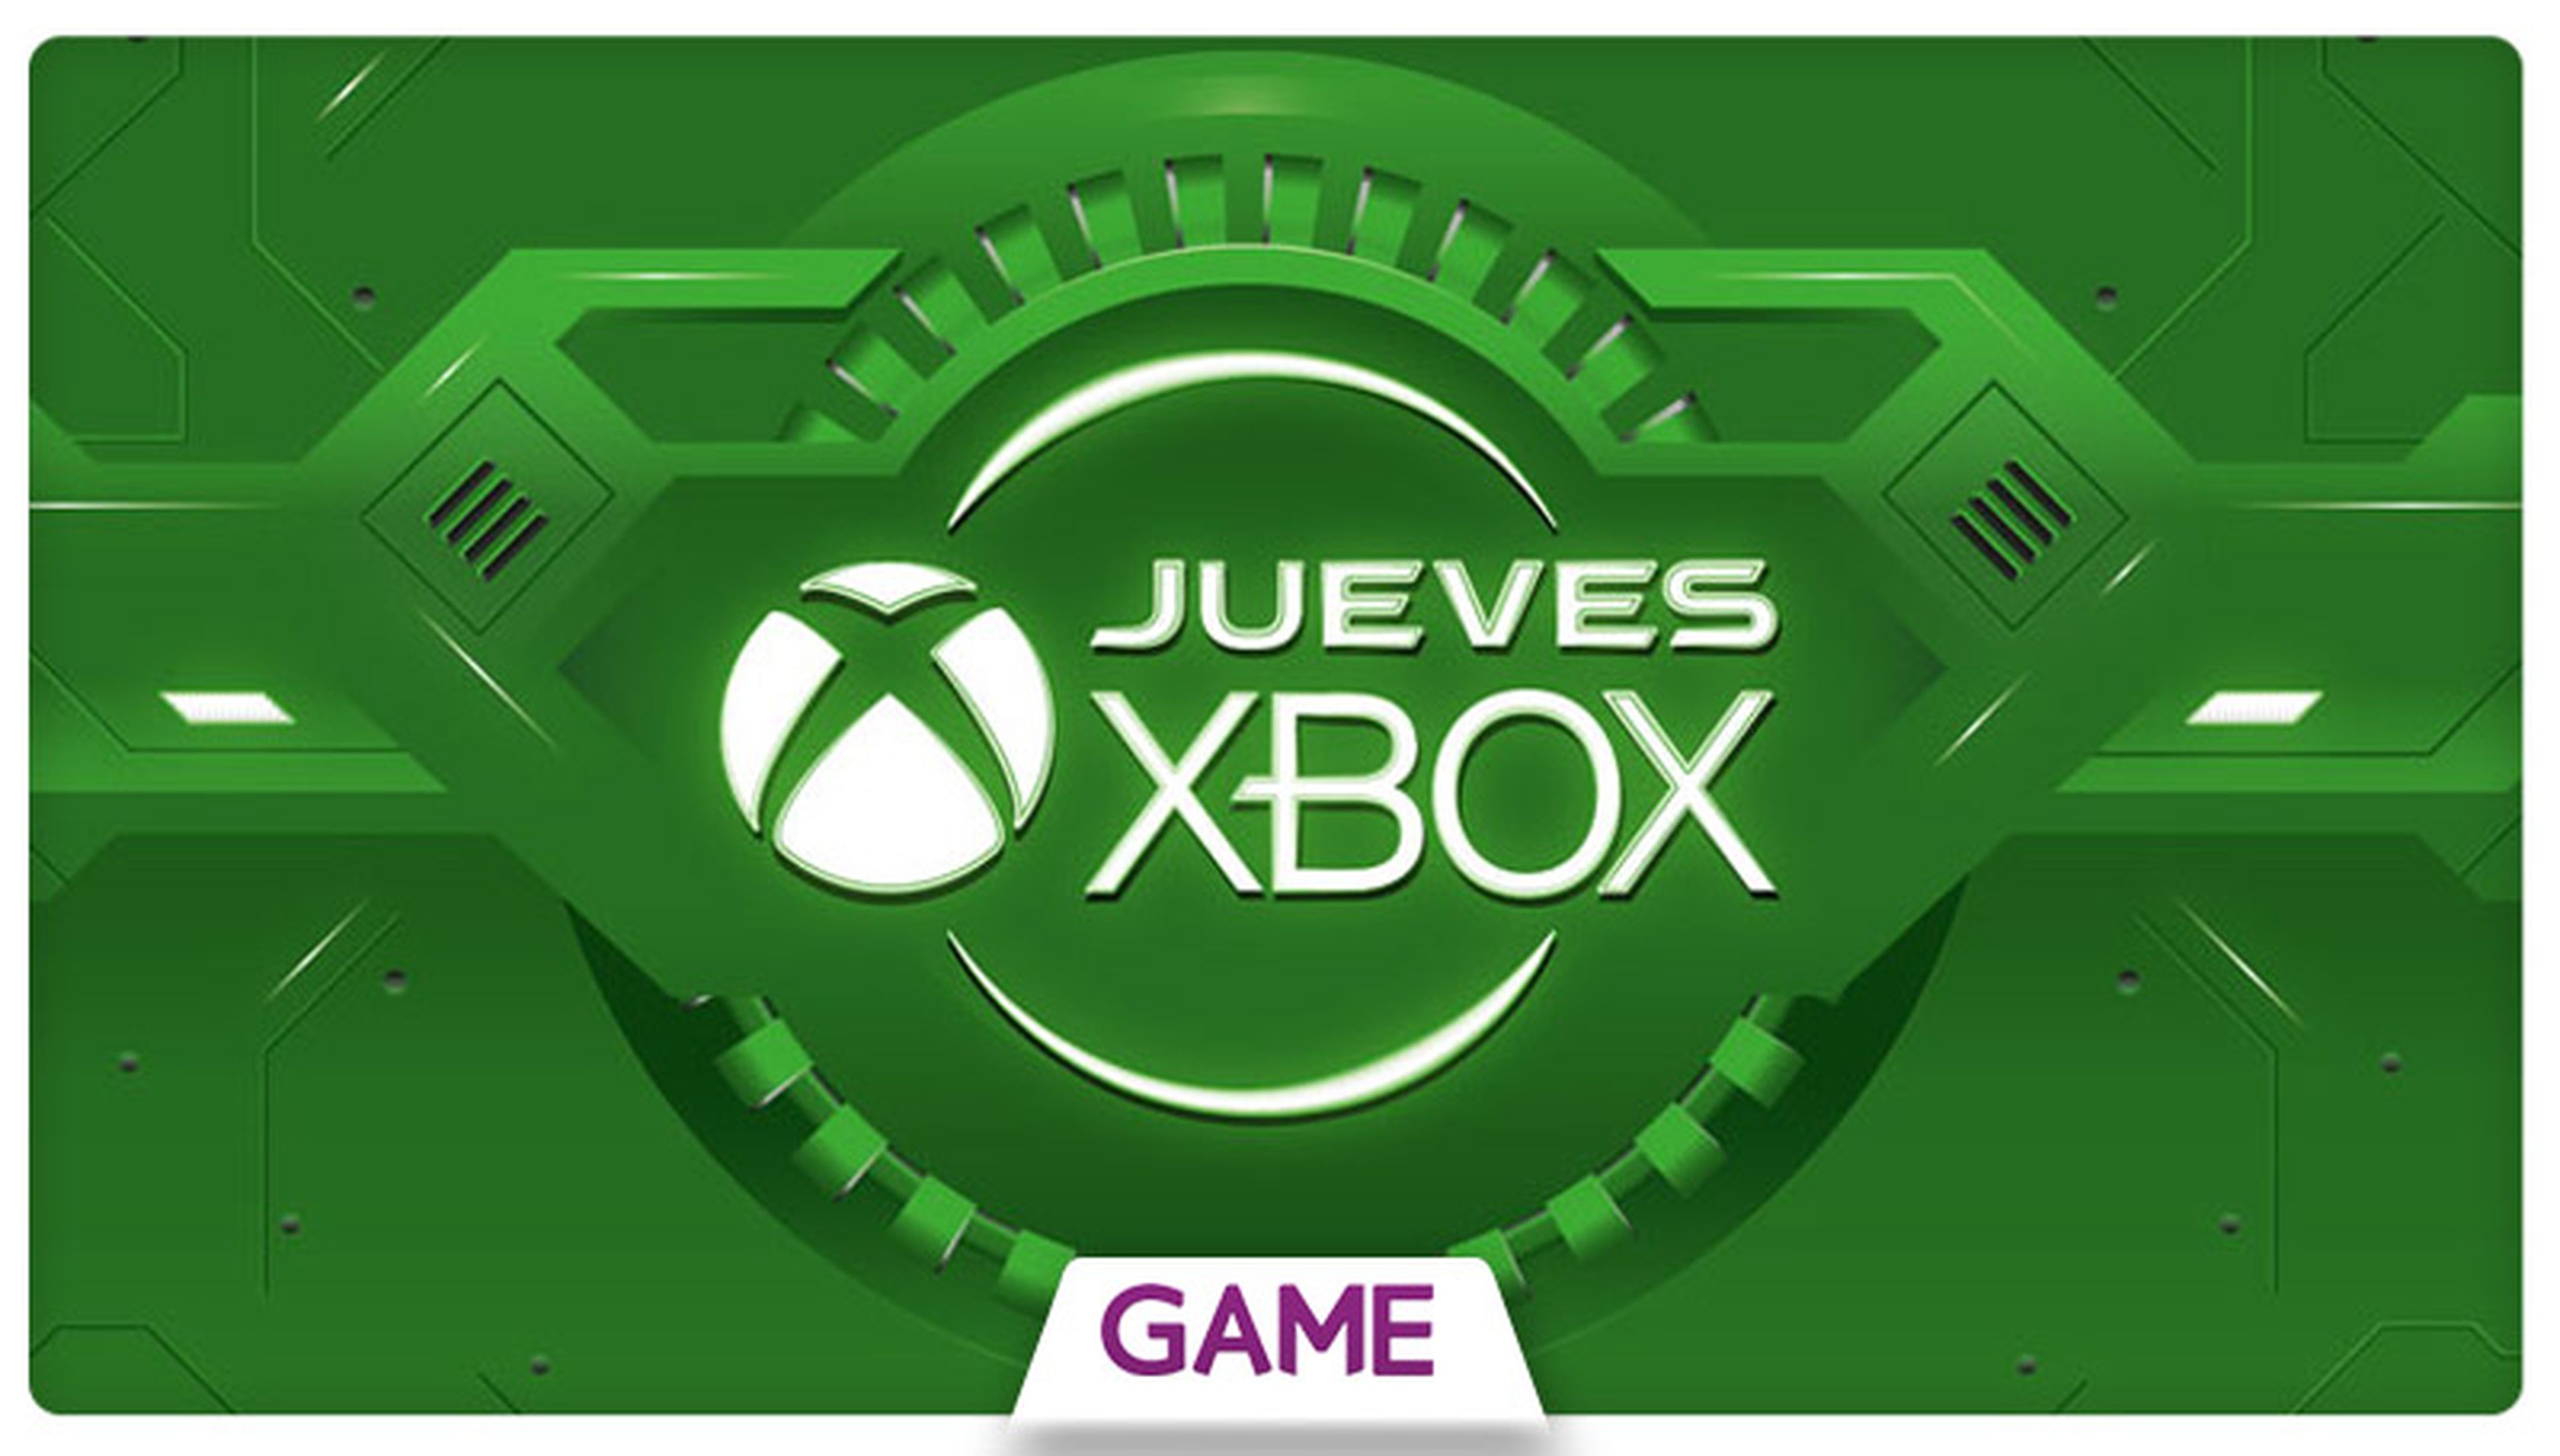 Jueves Xbox en GAME: Ofertas del 01/10/2015